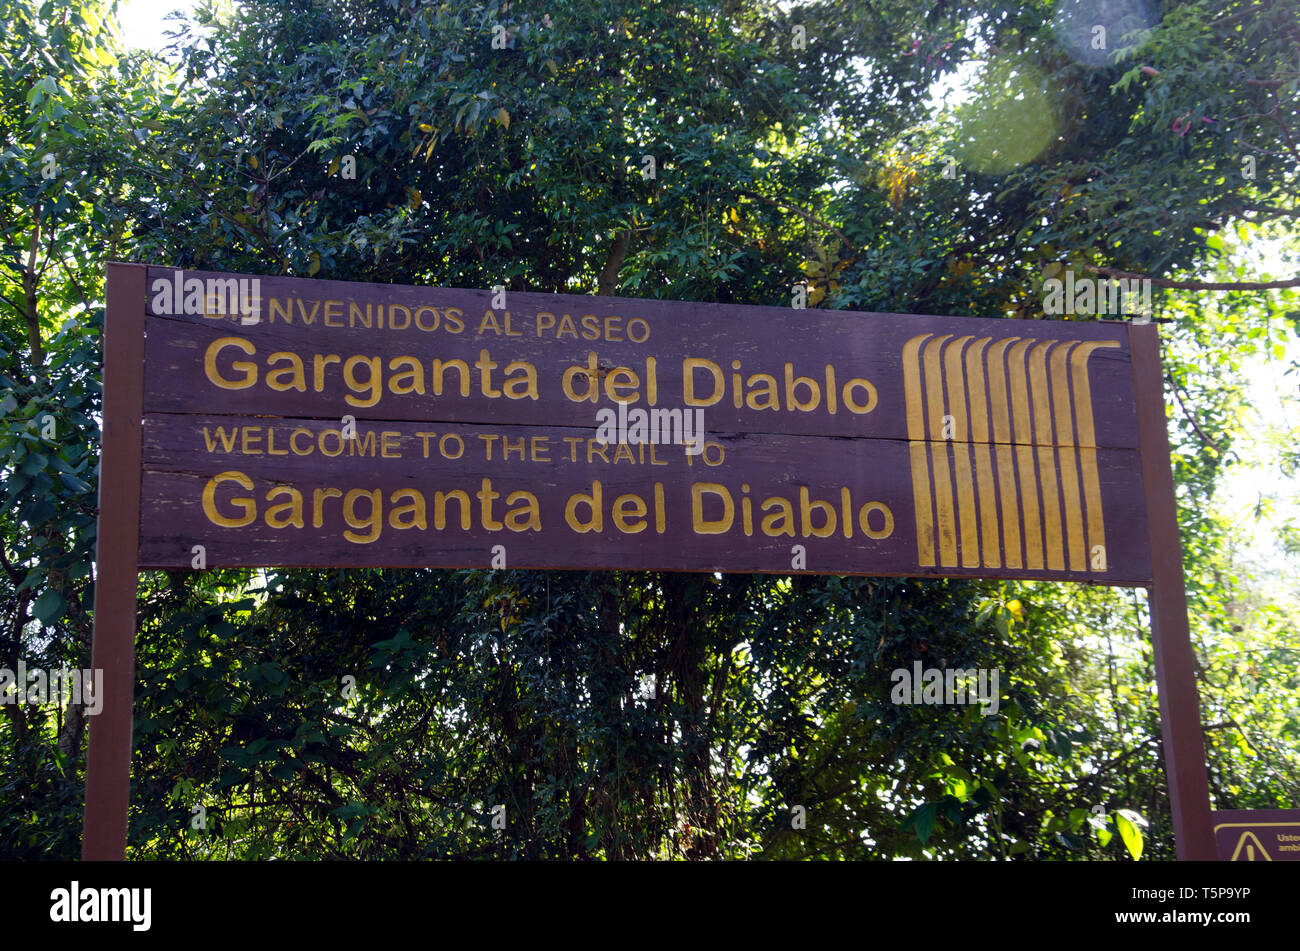 La 'Garganta del Diablo' firmar en ruta a las poderosas Cataratas del Iguazú alude a la temible fuerza adelante Foto de stock